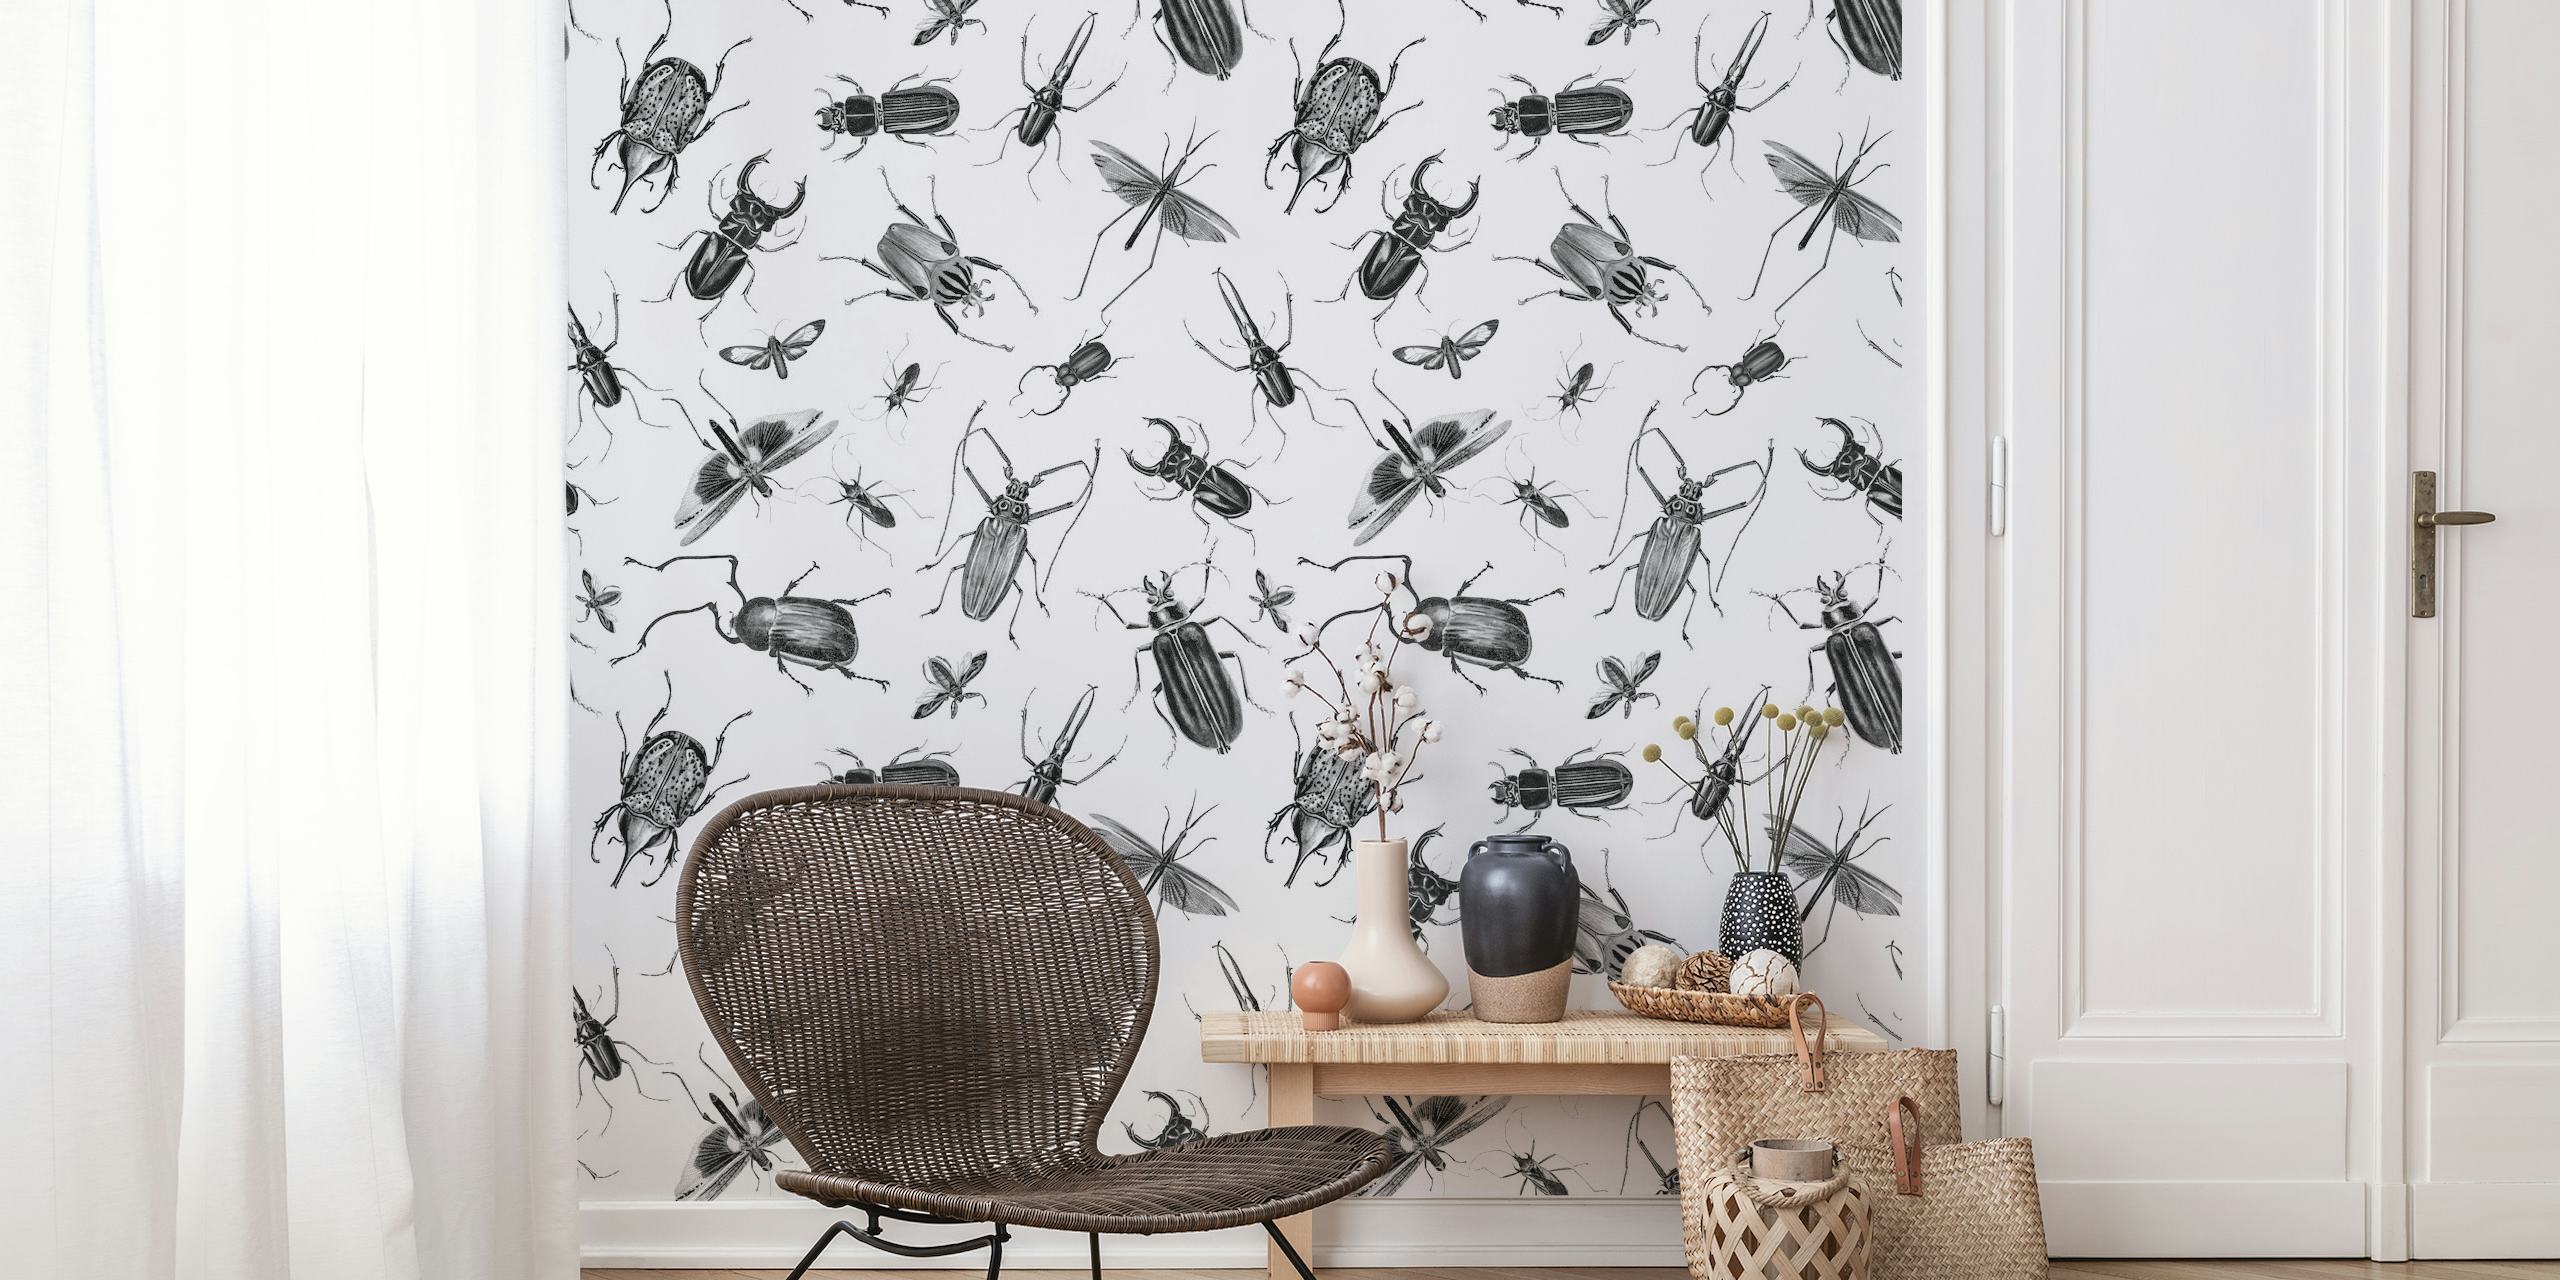 Vintage Beetles And Bugs papel de parede